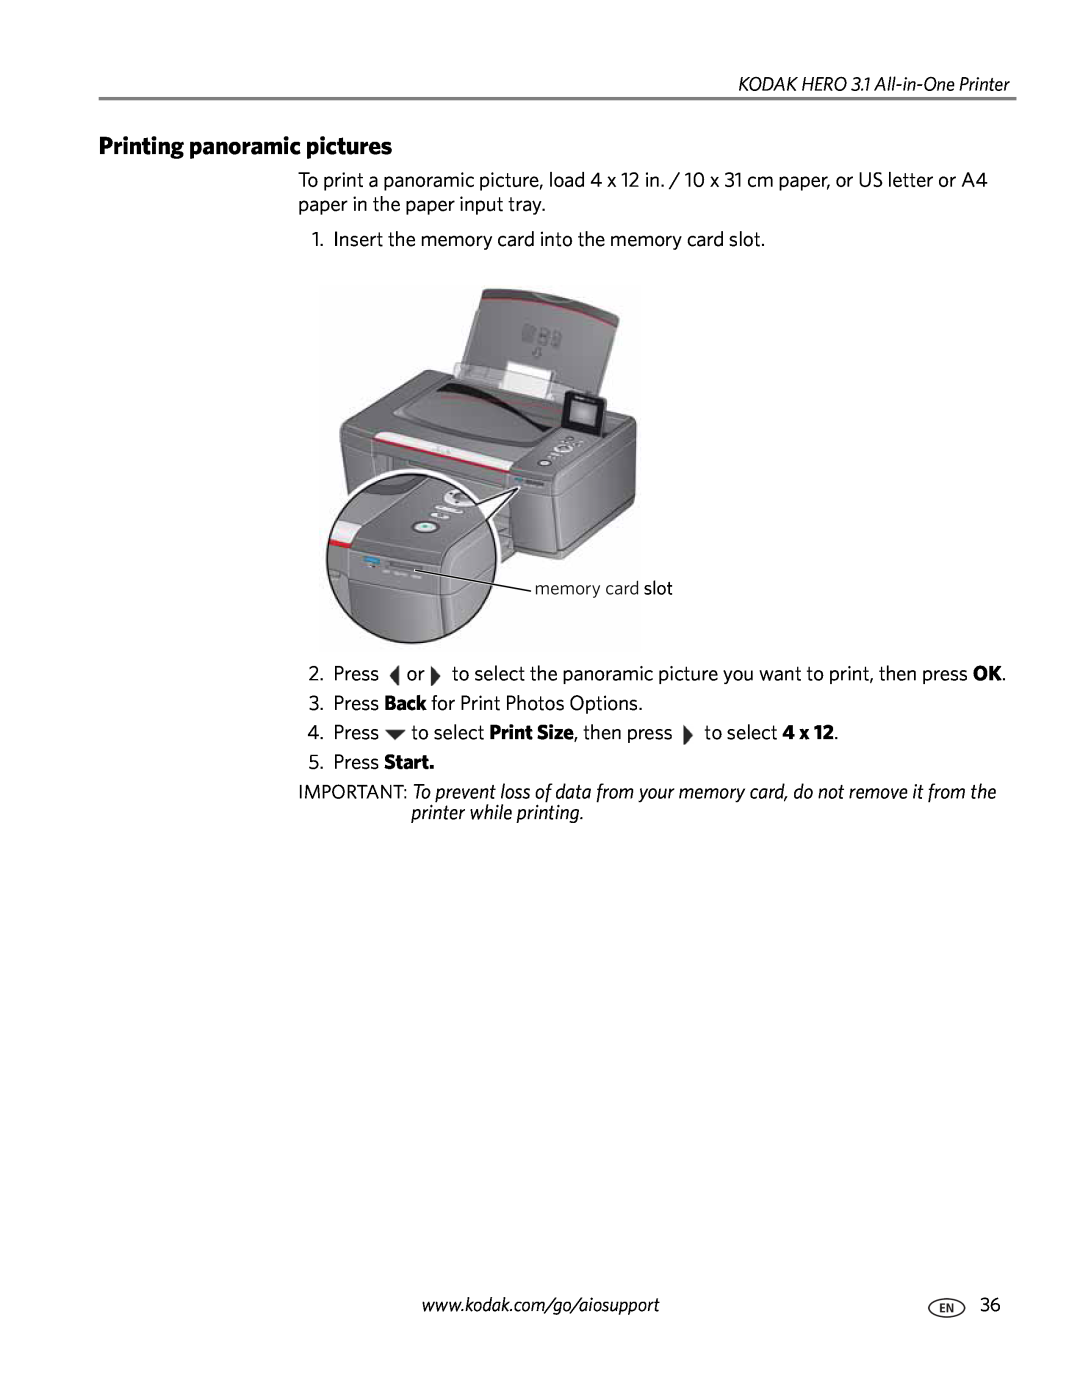 Kodak 3.1 manual Printing panoramic pictures 